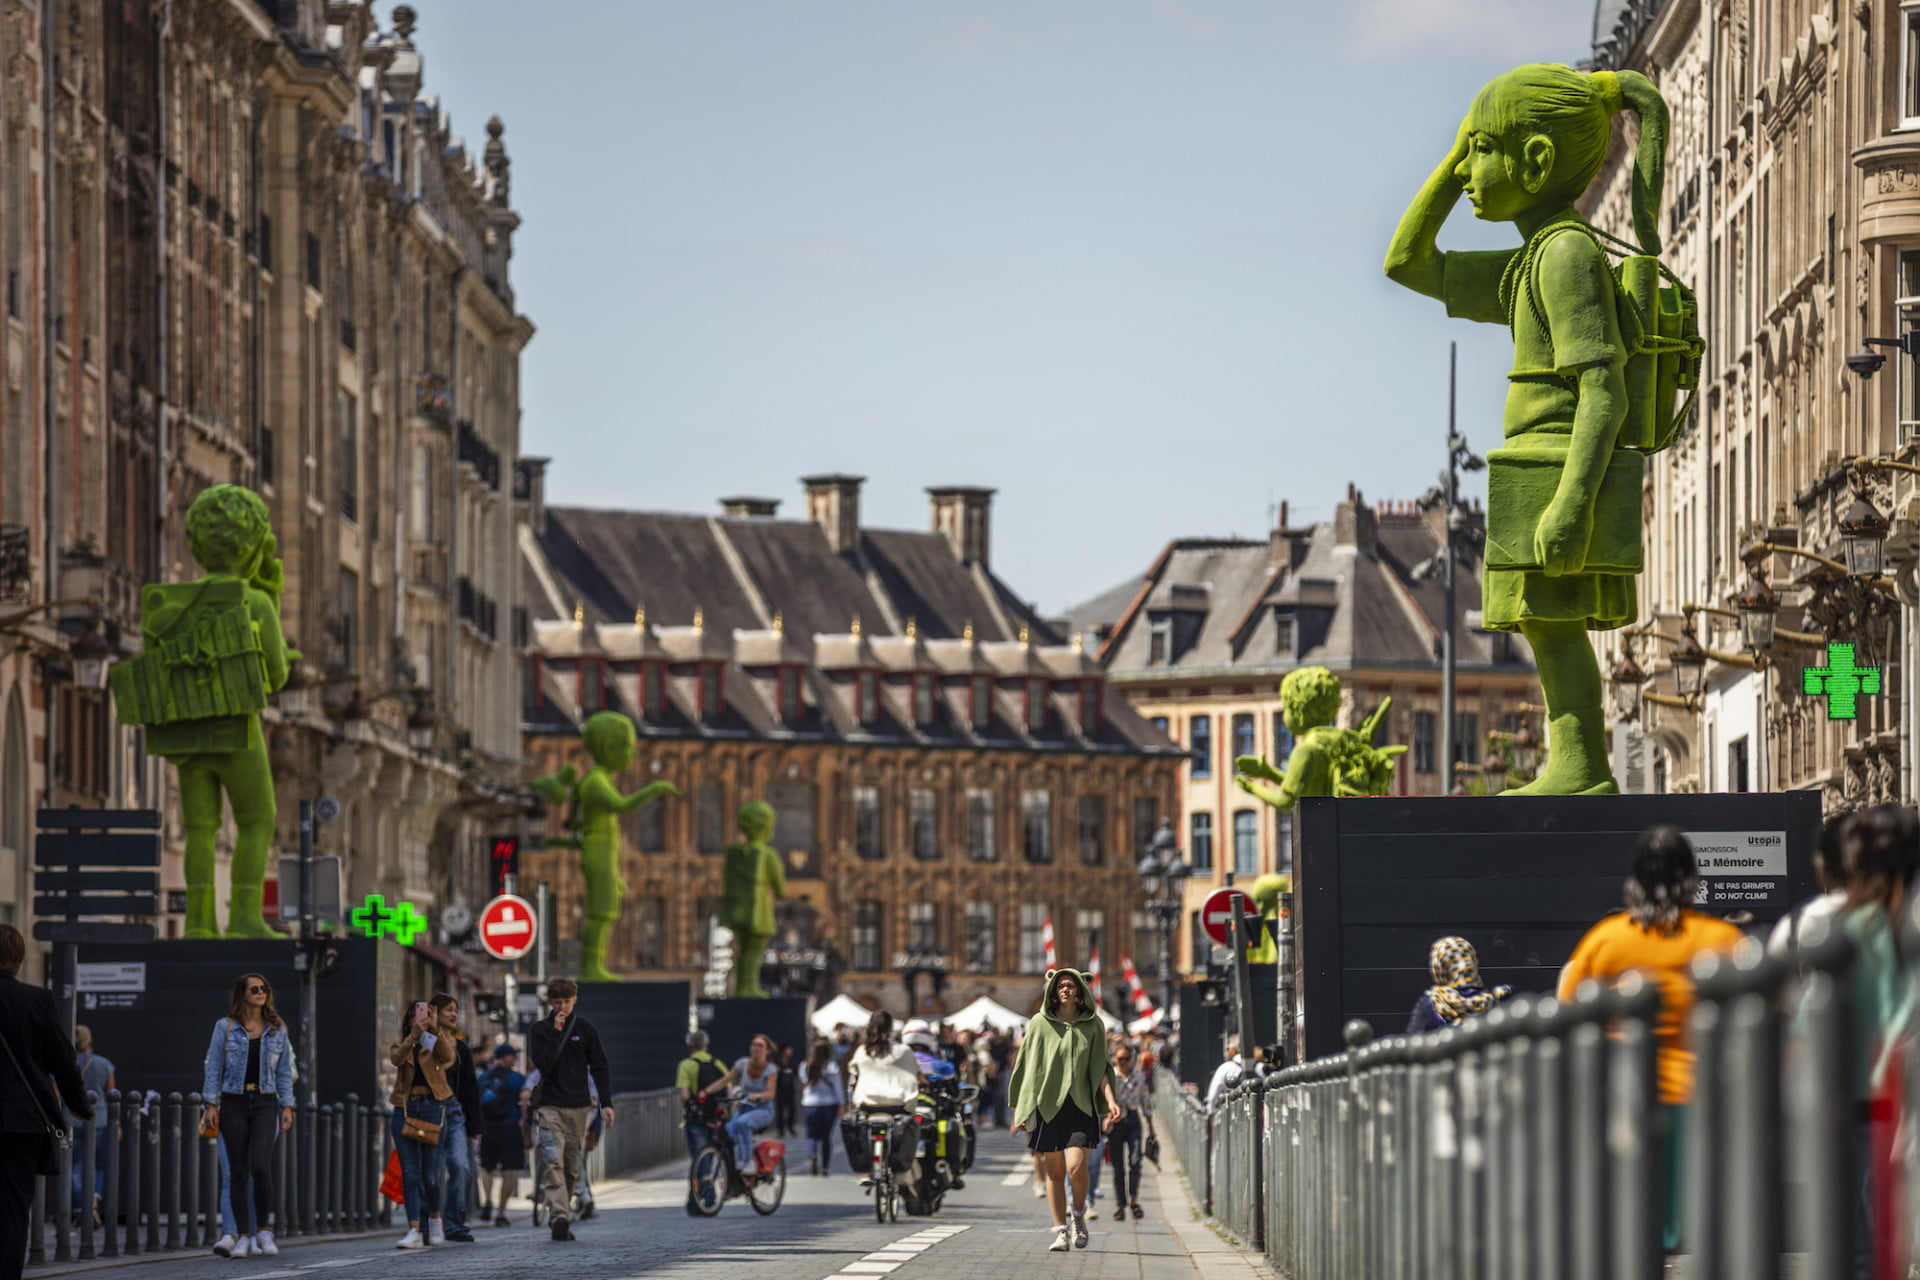 Large-scale fiberglass figurines in a street in Lille, France, retratando figuras que são revestidas em flocos verdes para fazê-las aparecer como se estivessem revestidas de musgo. Os peões descem a rua e as esculturas são exibidas em grandes pedestais.